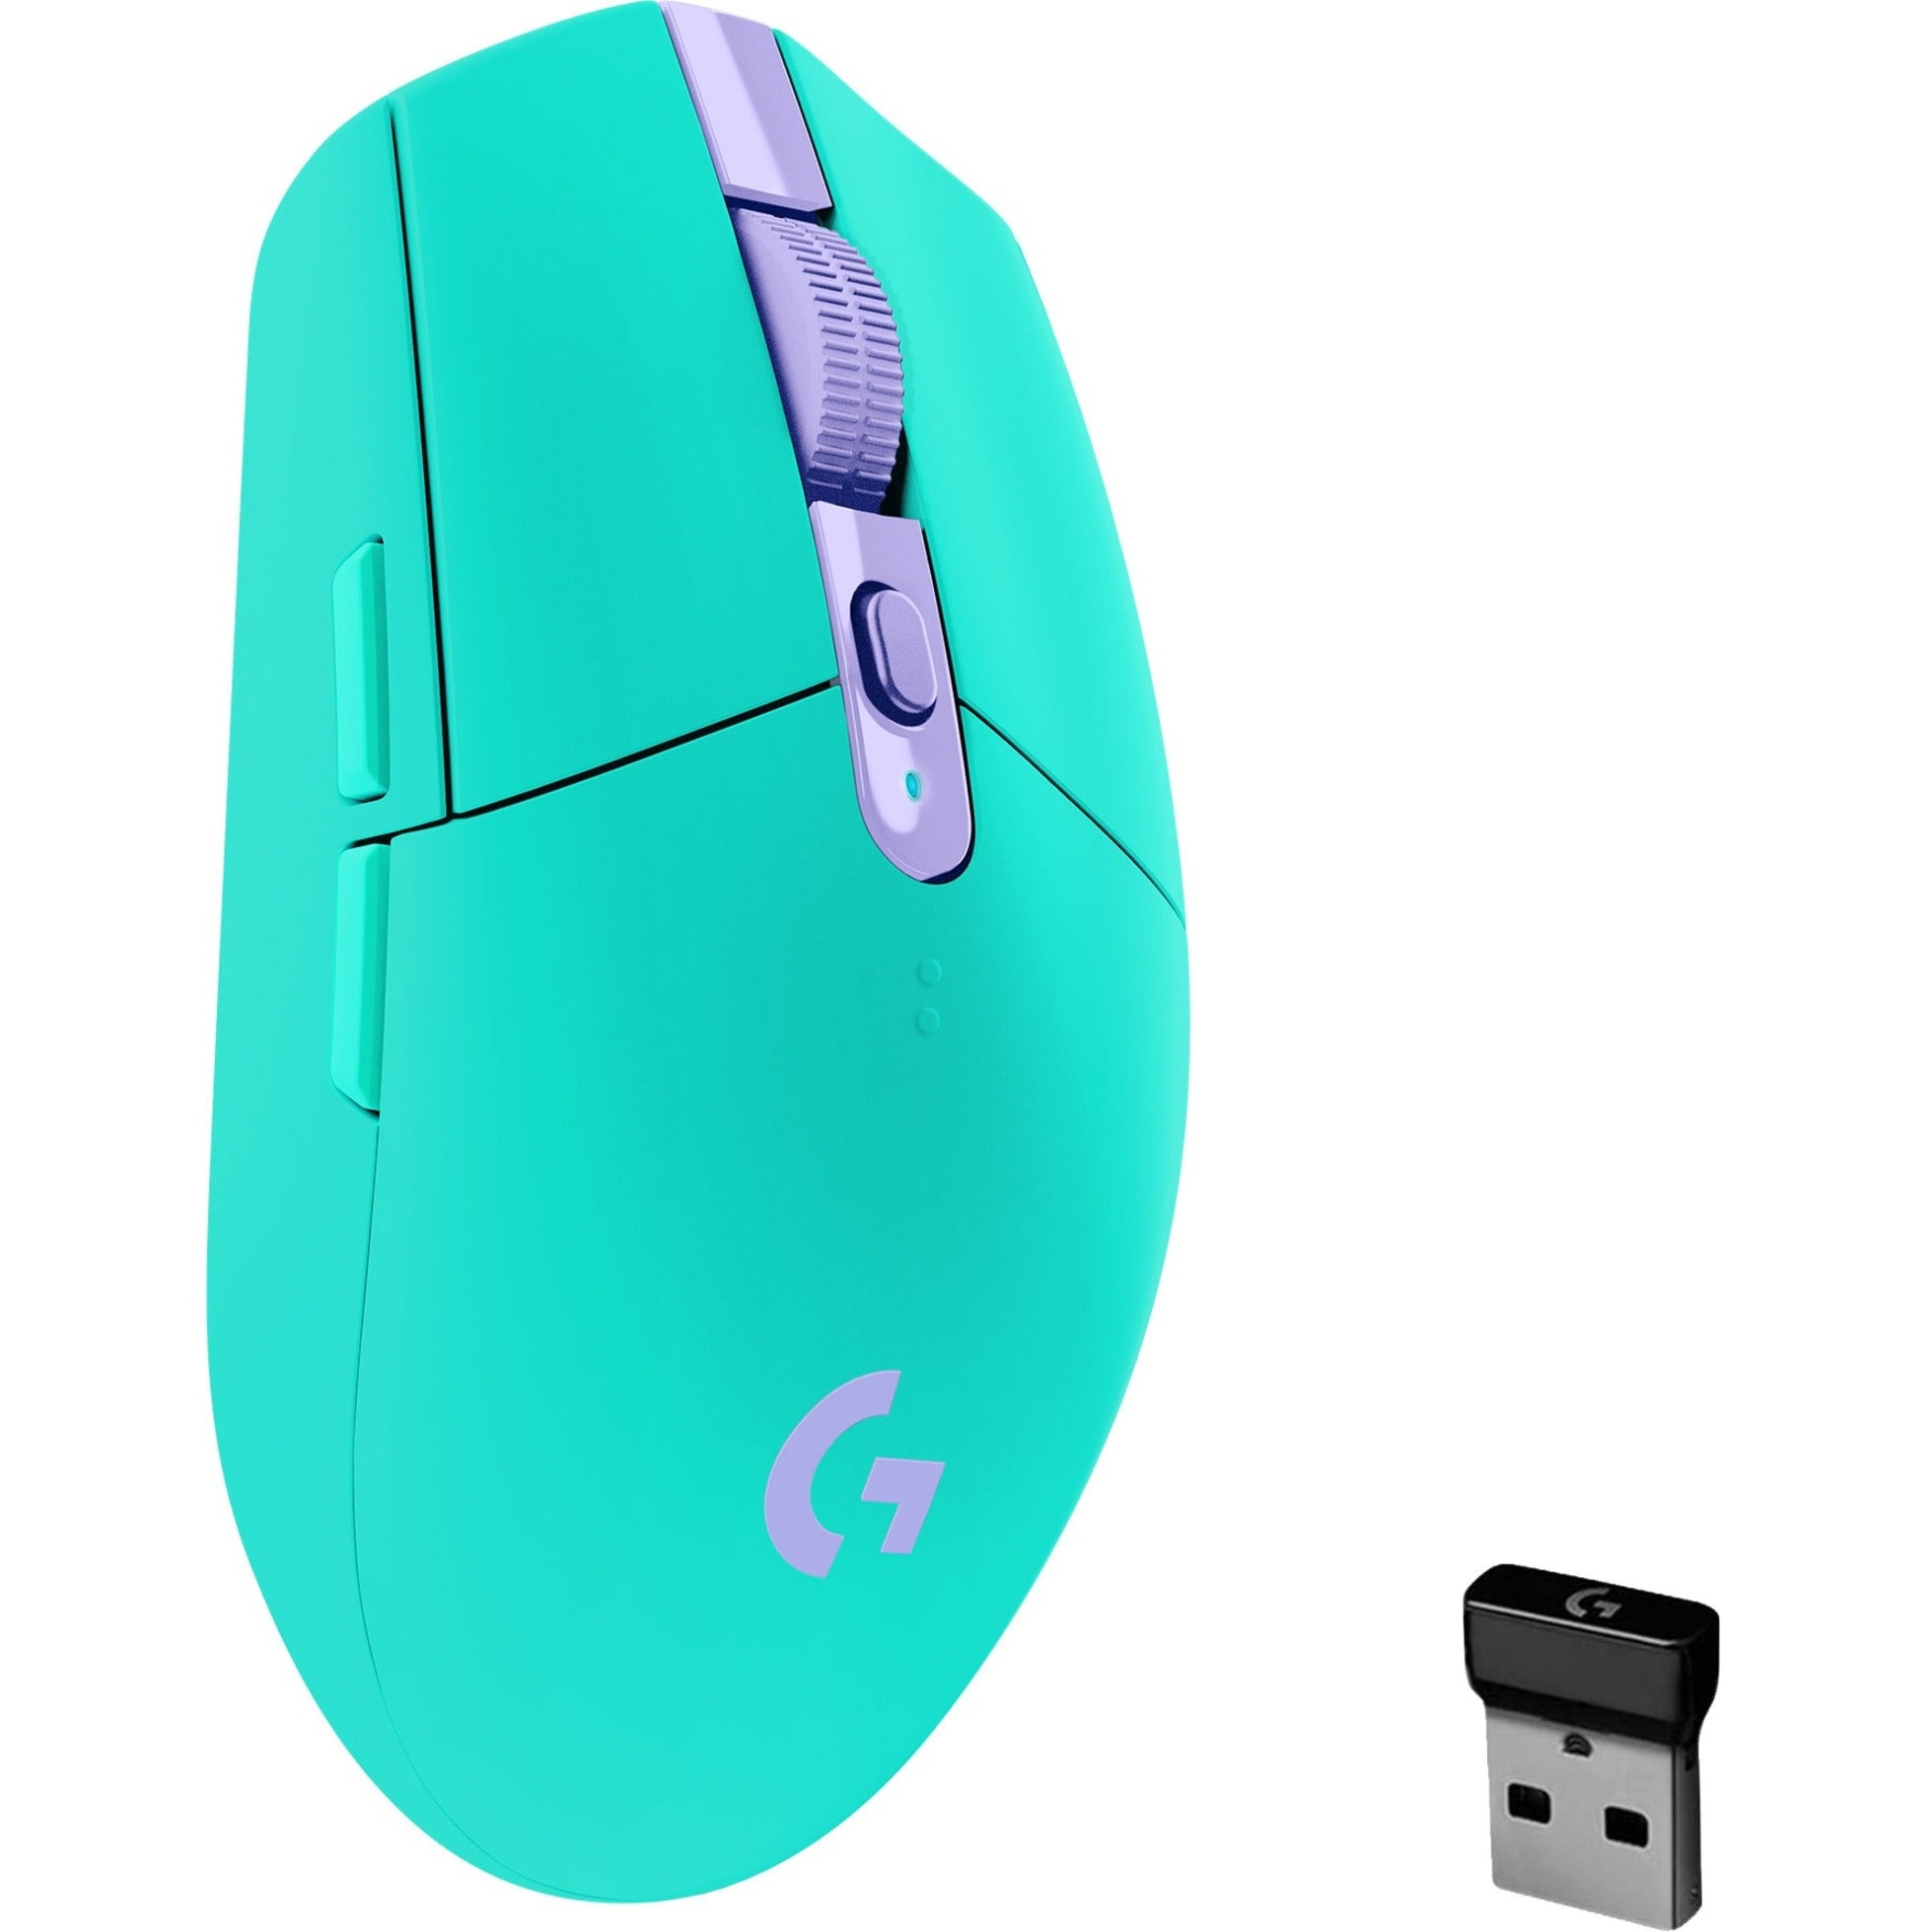 Logitech 910-006376 G305 LIGHTSPEED Wireless Gaming Mouse 2 Jahre Garantie 12000 dpi 2.4 GHz 6 programmierbare Tasten